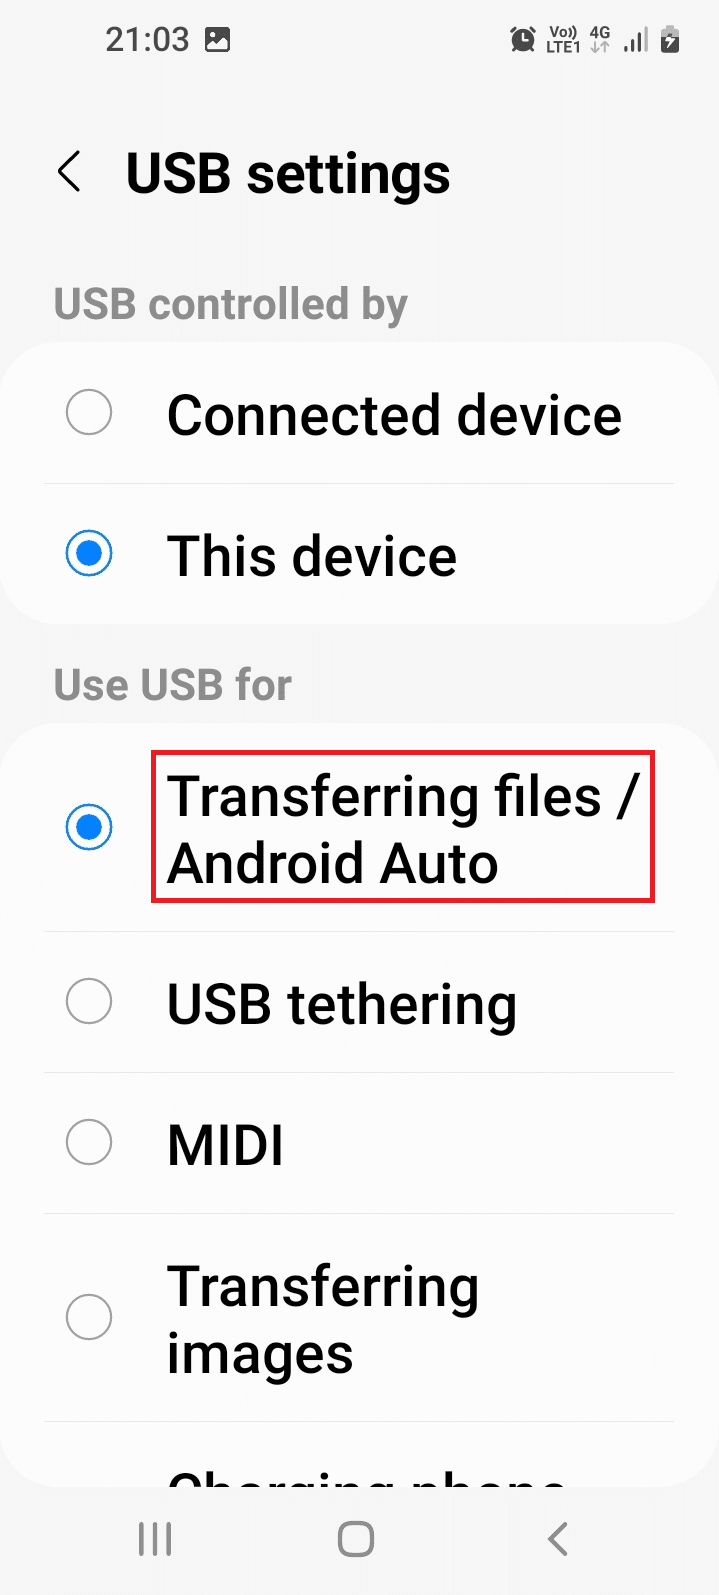 Tocca l'opzione Trasferimento file/Android Auto nella sezione Usa USB per